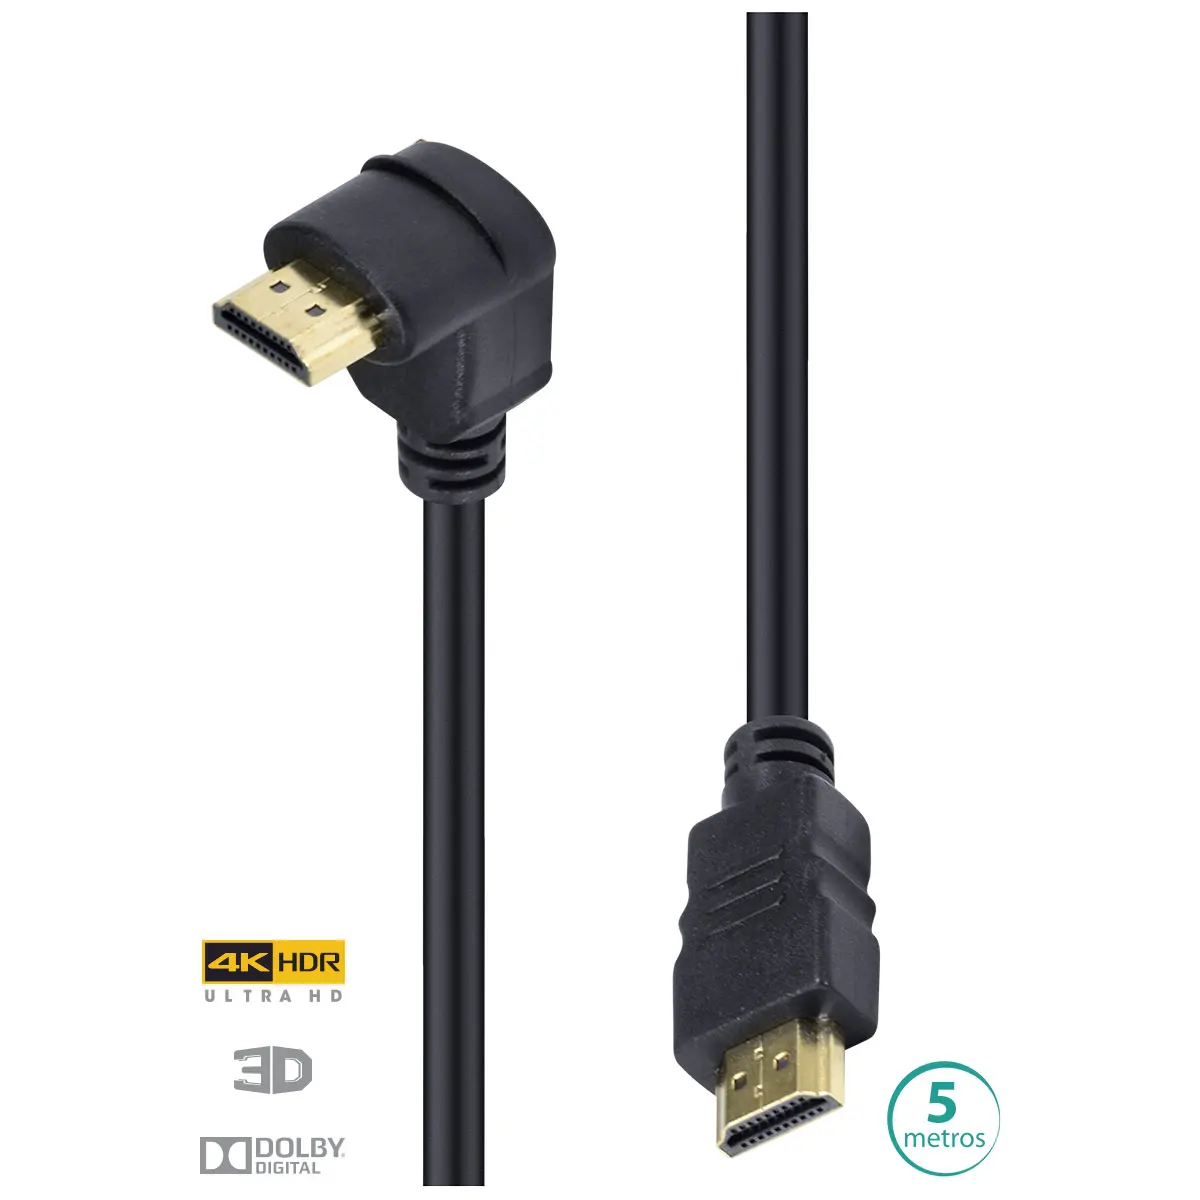 

CABO HDMI 2.0 4K ULTRA HD 3D CONEXÃO ETHERNET COM 01 CONECTOR 90 ° 5 METROS - H2090-5